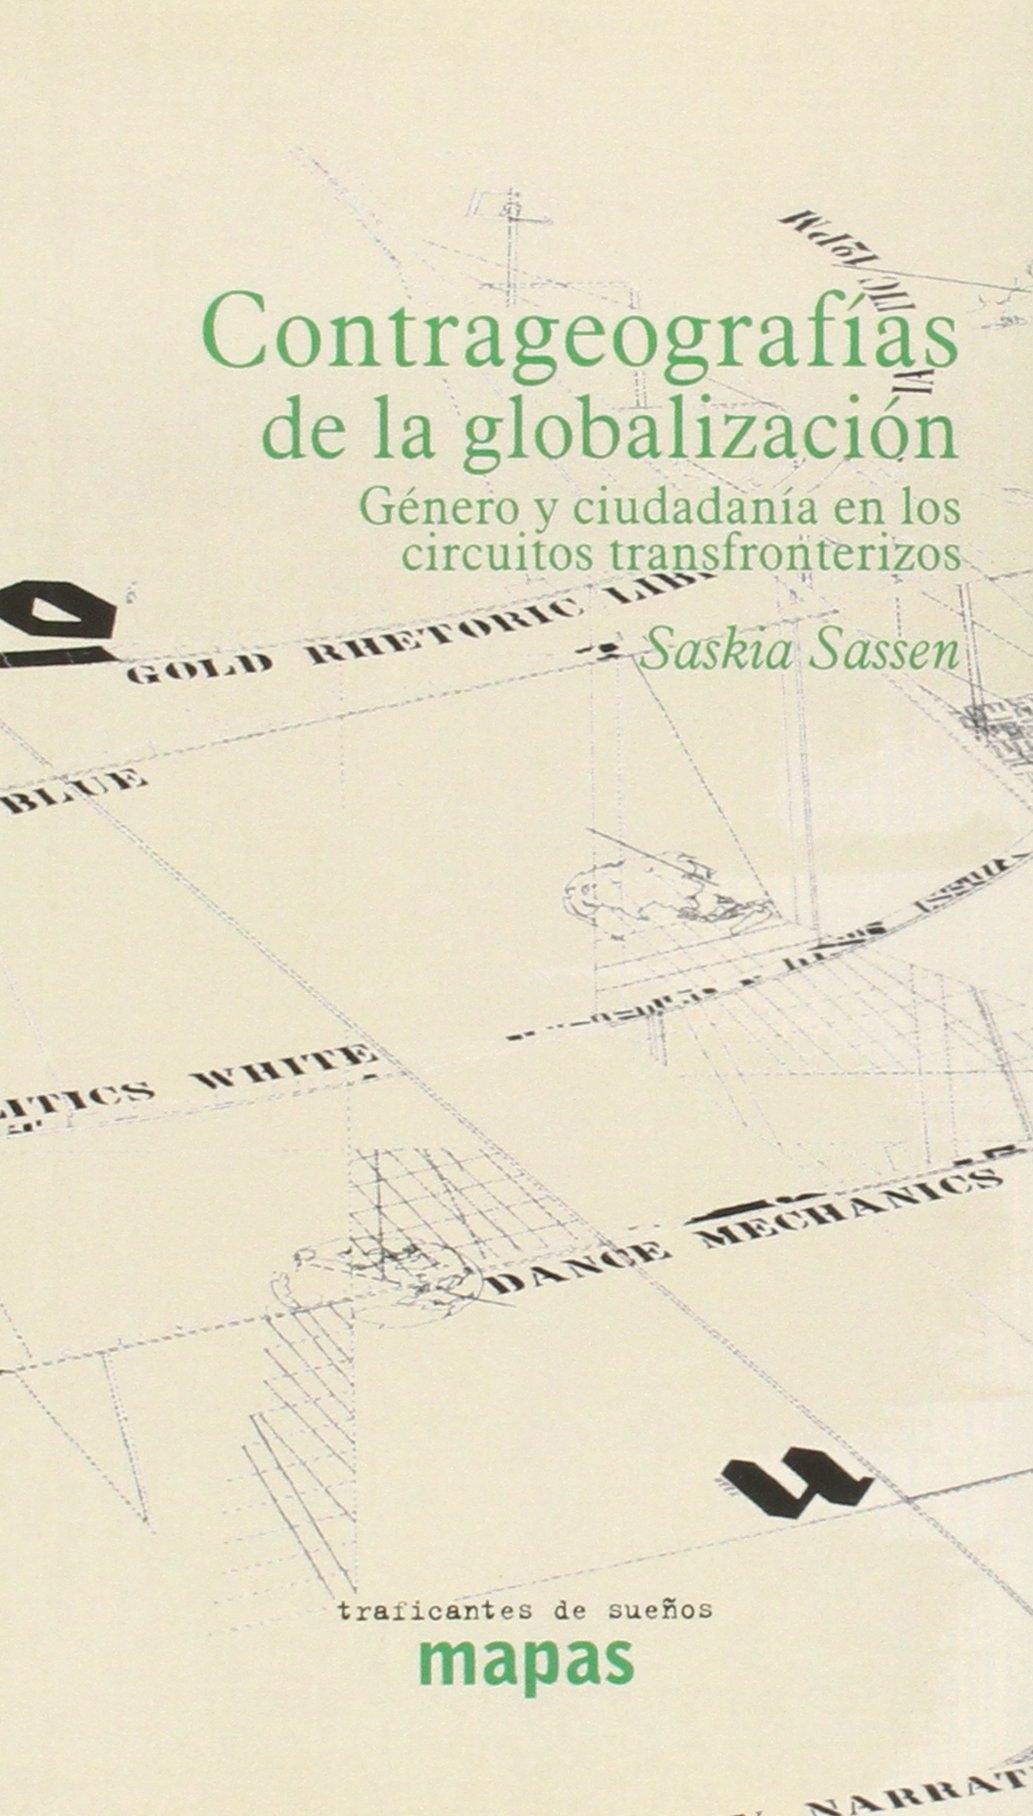 CONTRA GEOGRAFÍAS DE LA GLOBALIZACIÓN "GÉNERO Y CIUDADANÍA EN LOS CIRCUITOS TRANSFRONTERIZOS"